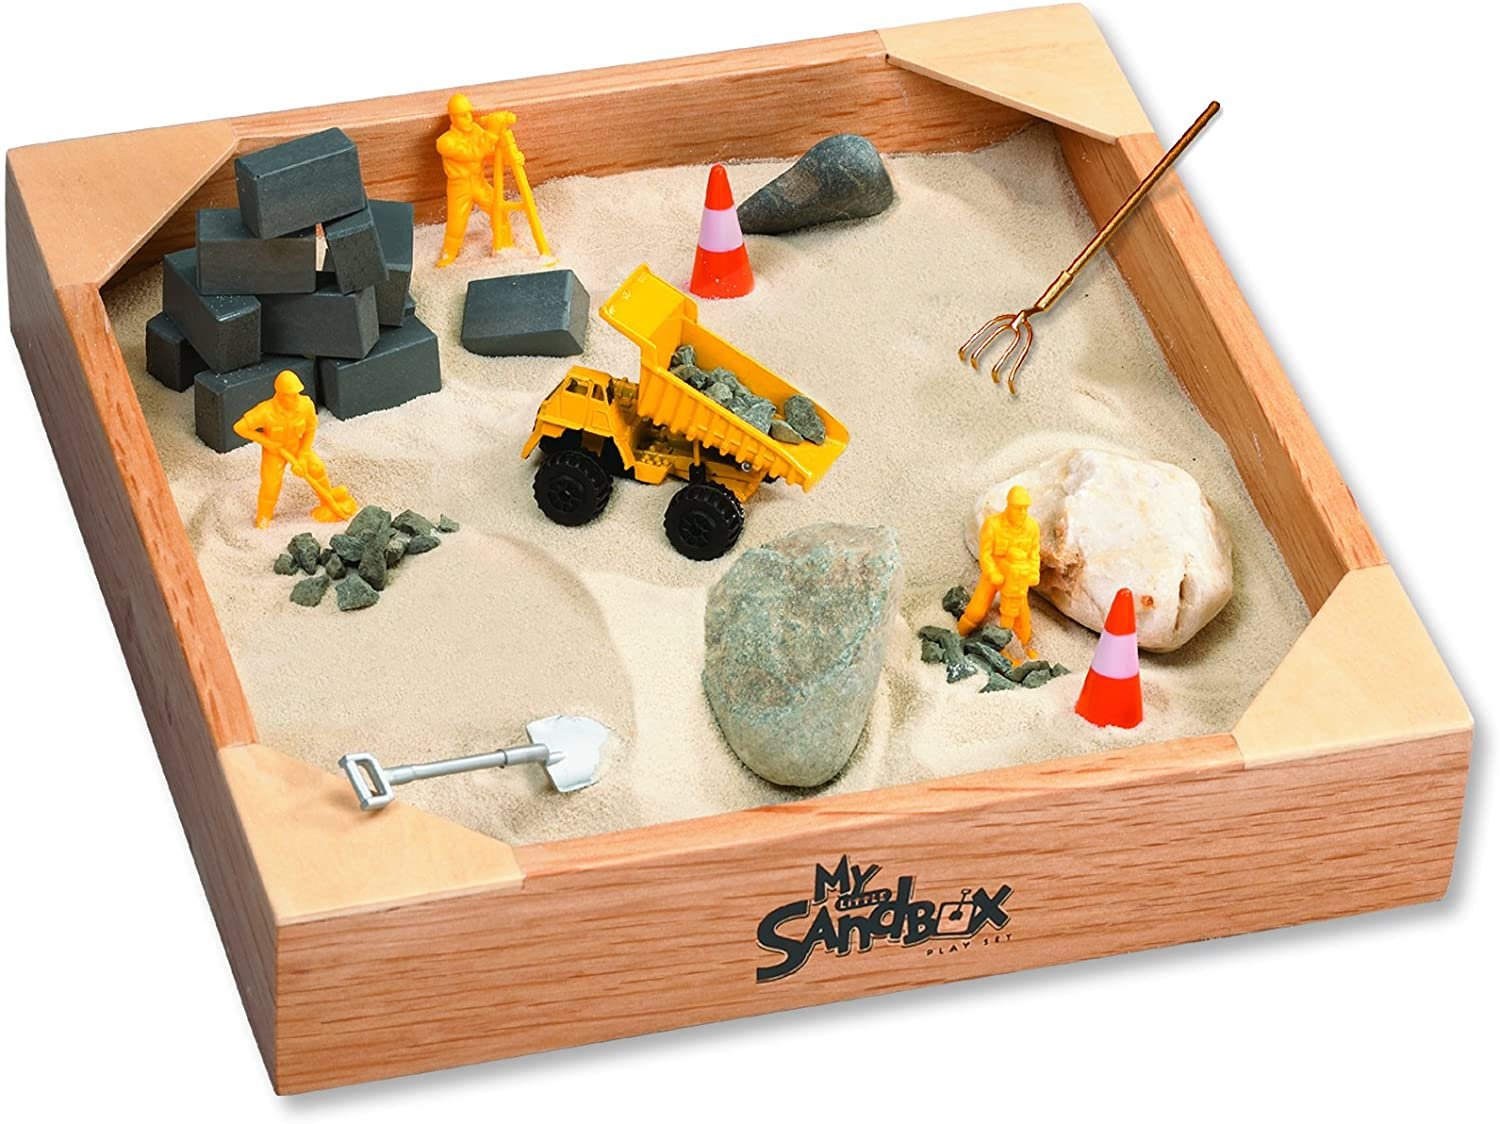 4. My Little Sandbox – Big Builder 